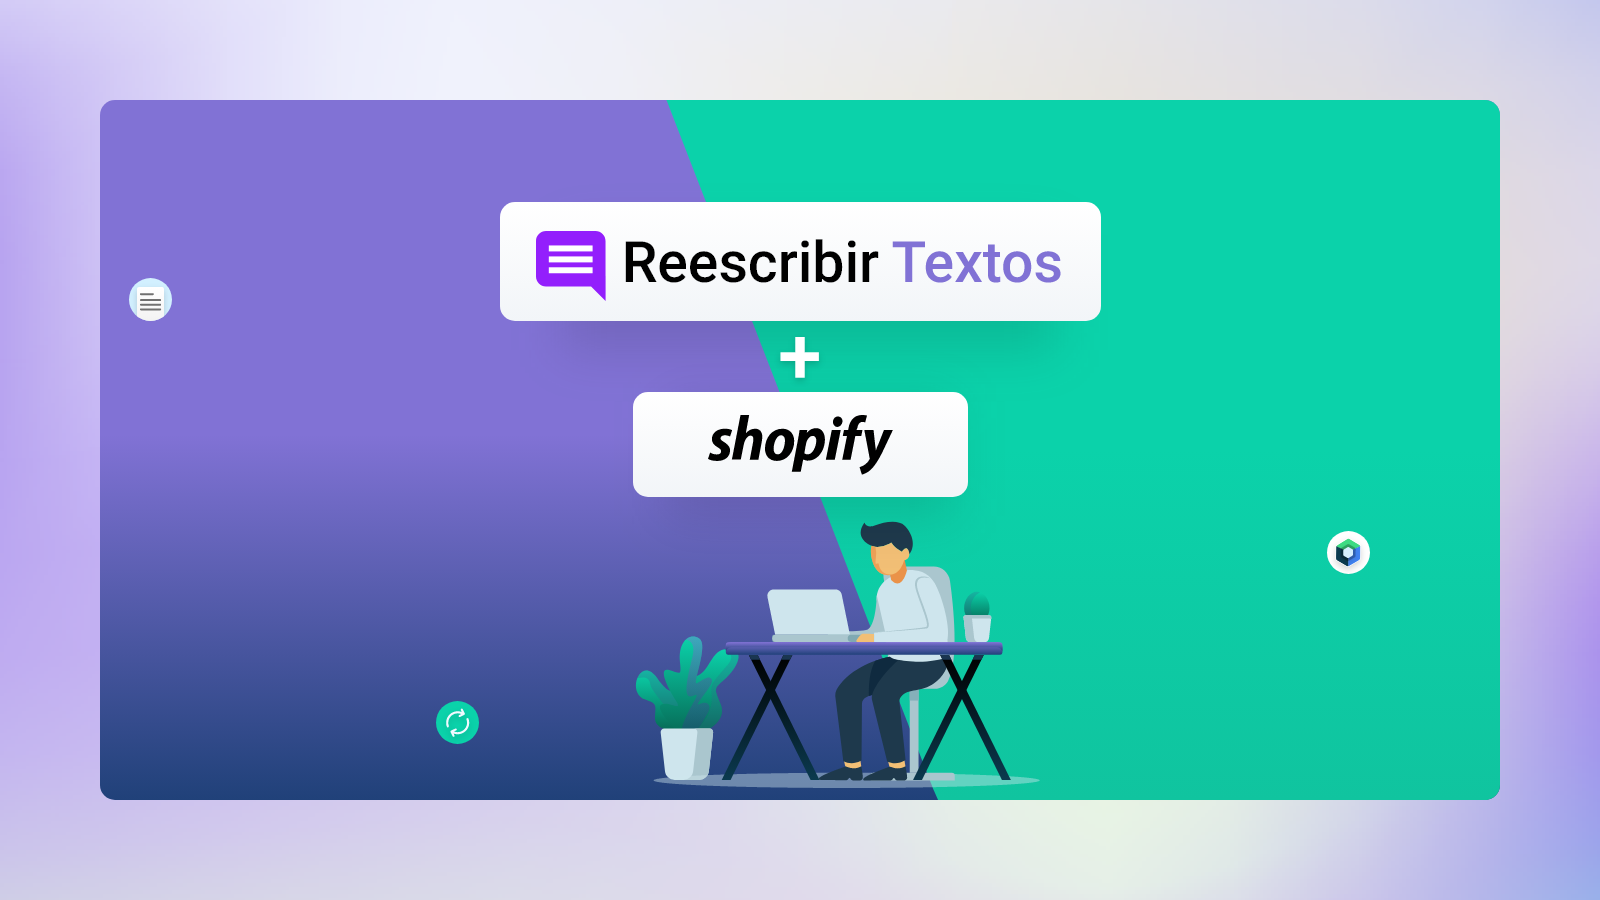 Reescribir Textos App - Shopify